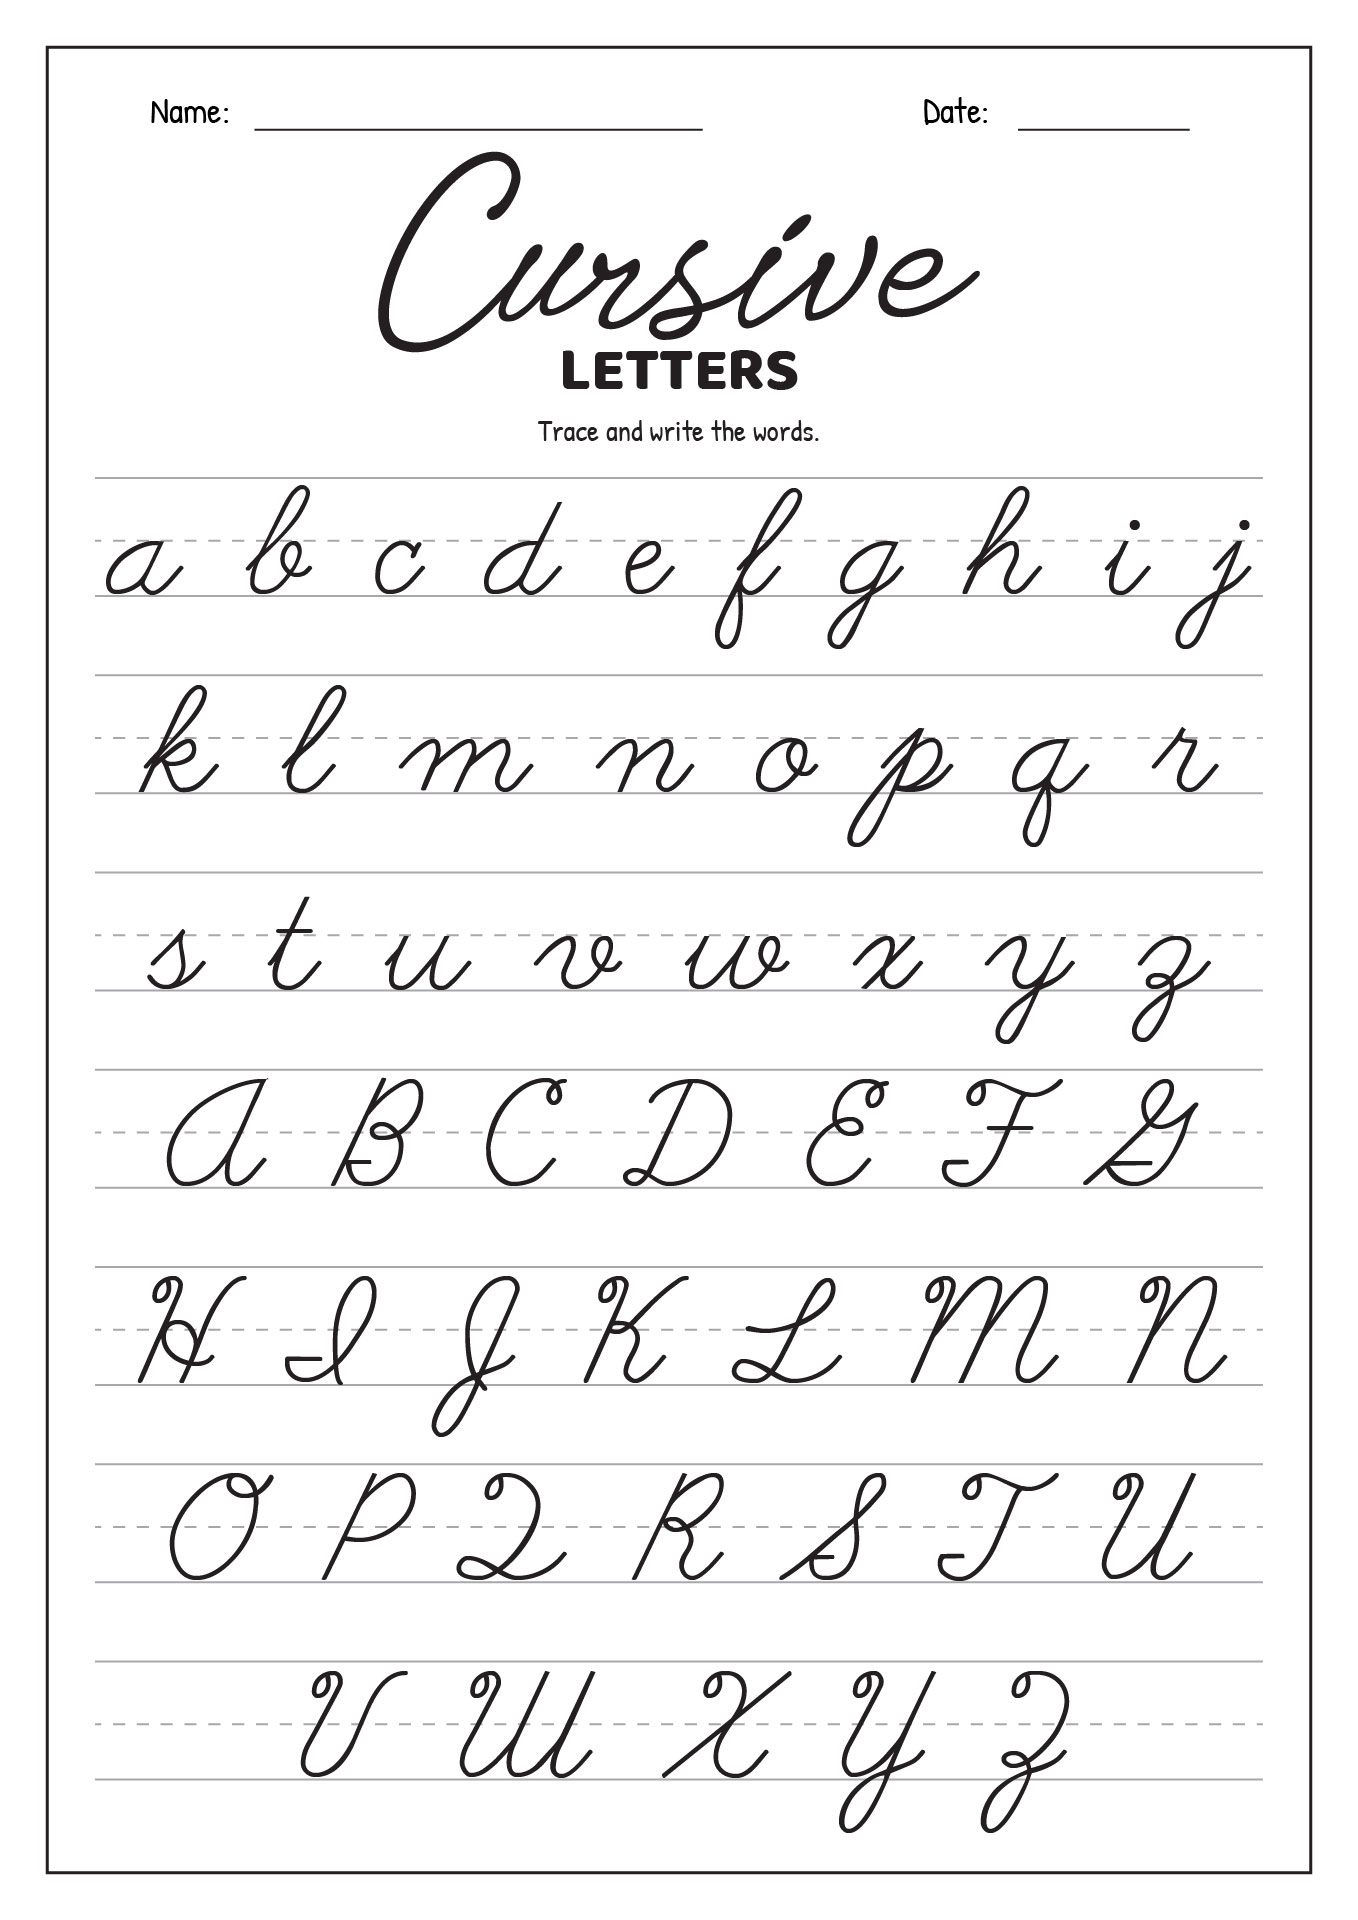 Cursive Letters Print Out